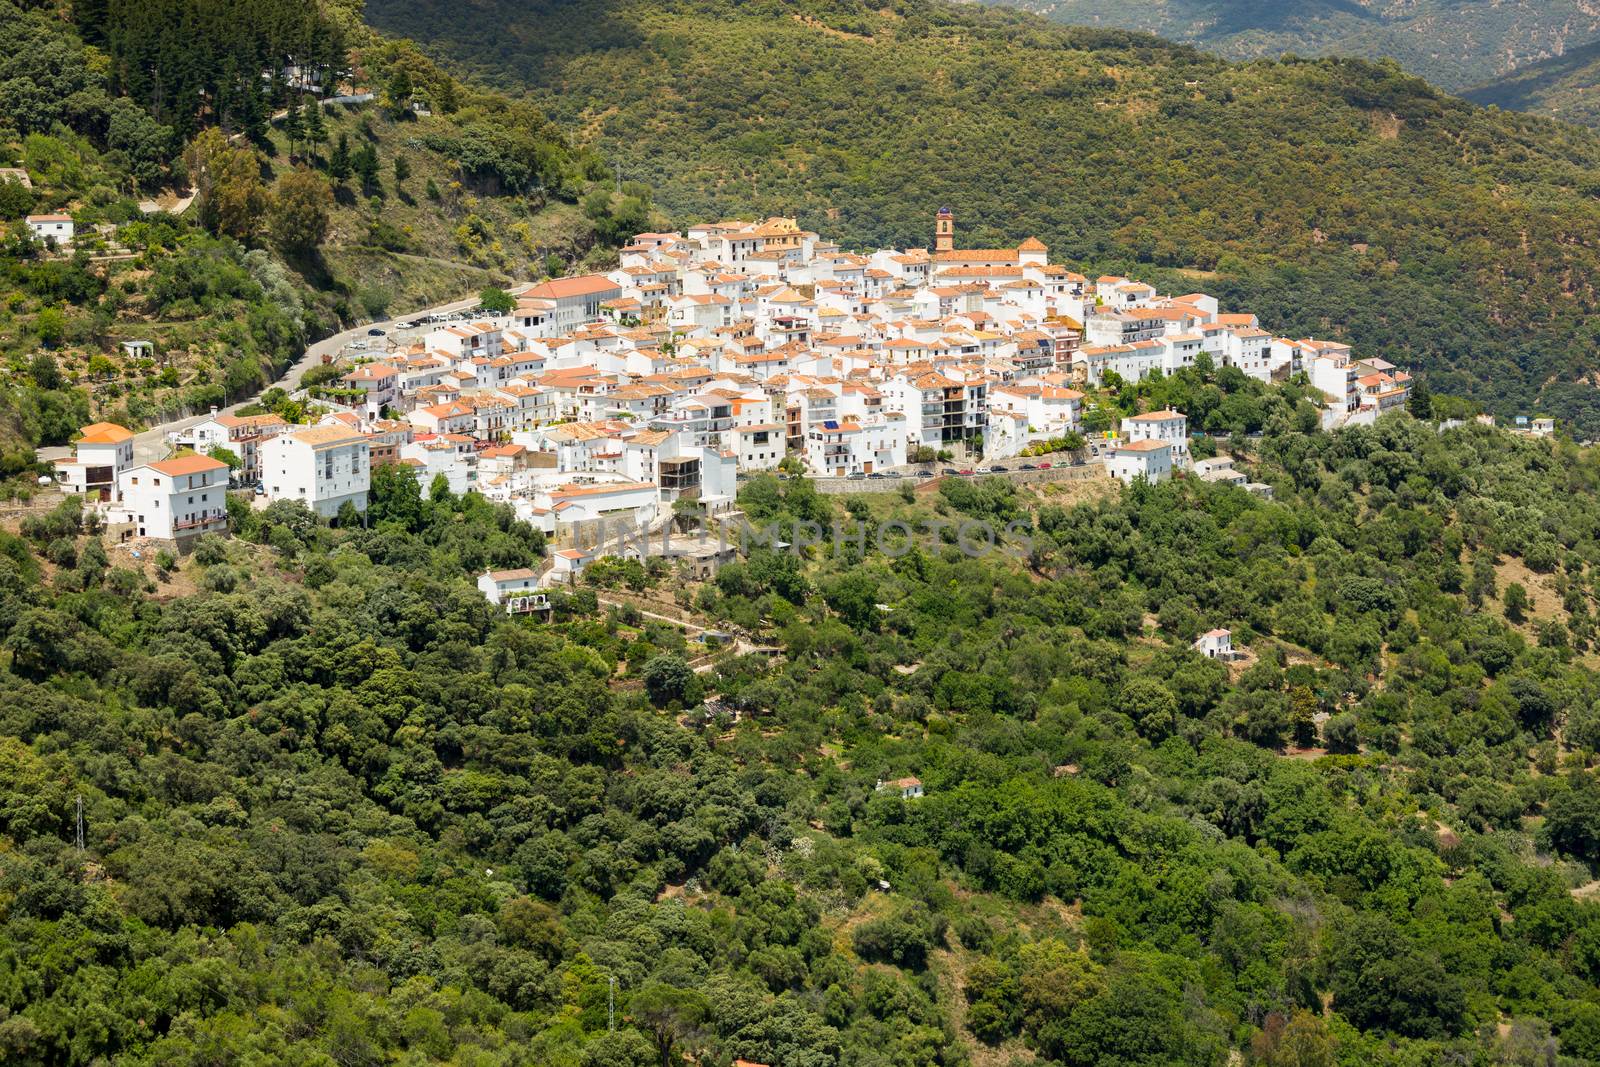 Andalusian village (Pueblos Blancos) in Sierra de las Nieves, Malaga, Spain